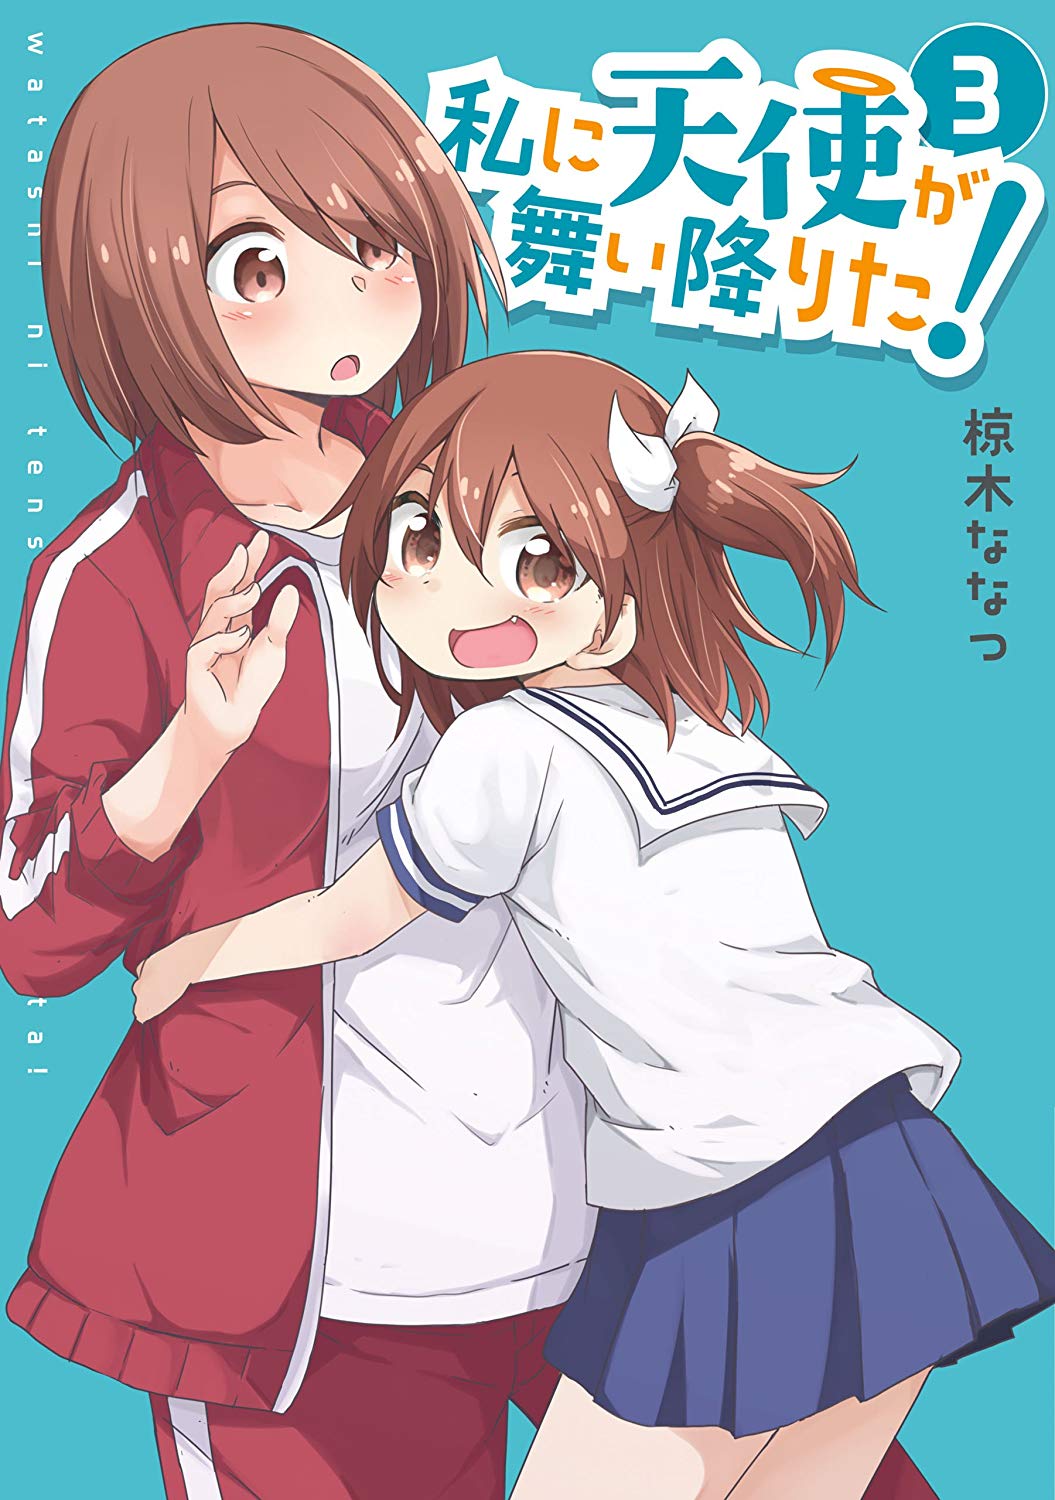 Watashi ni Tenshi ga Maiorita! (Manga)